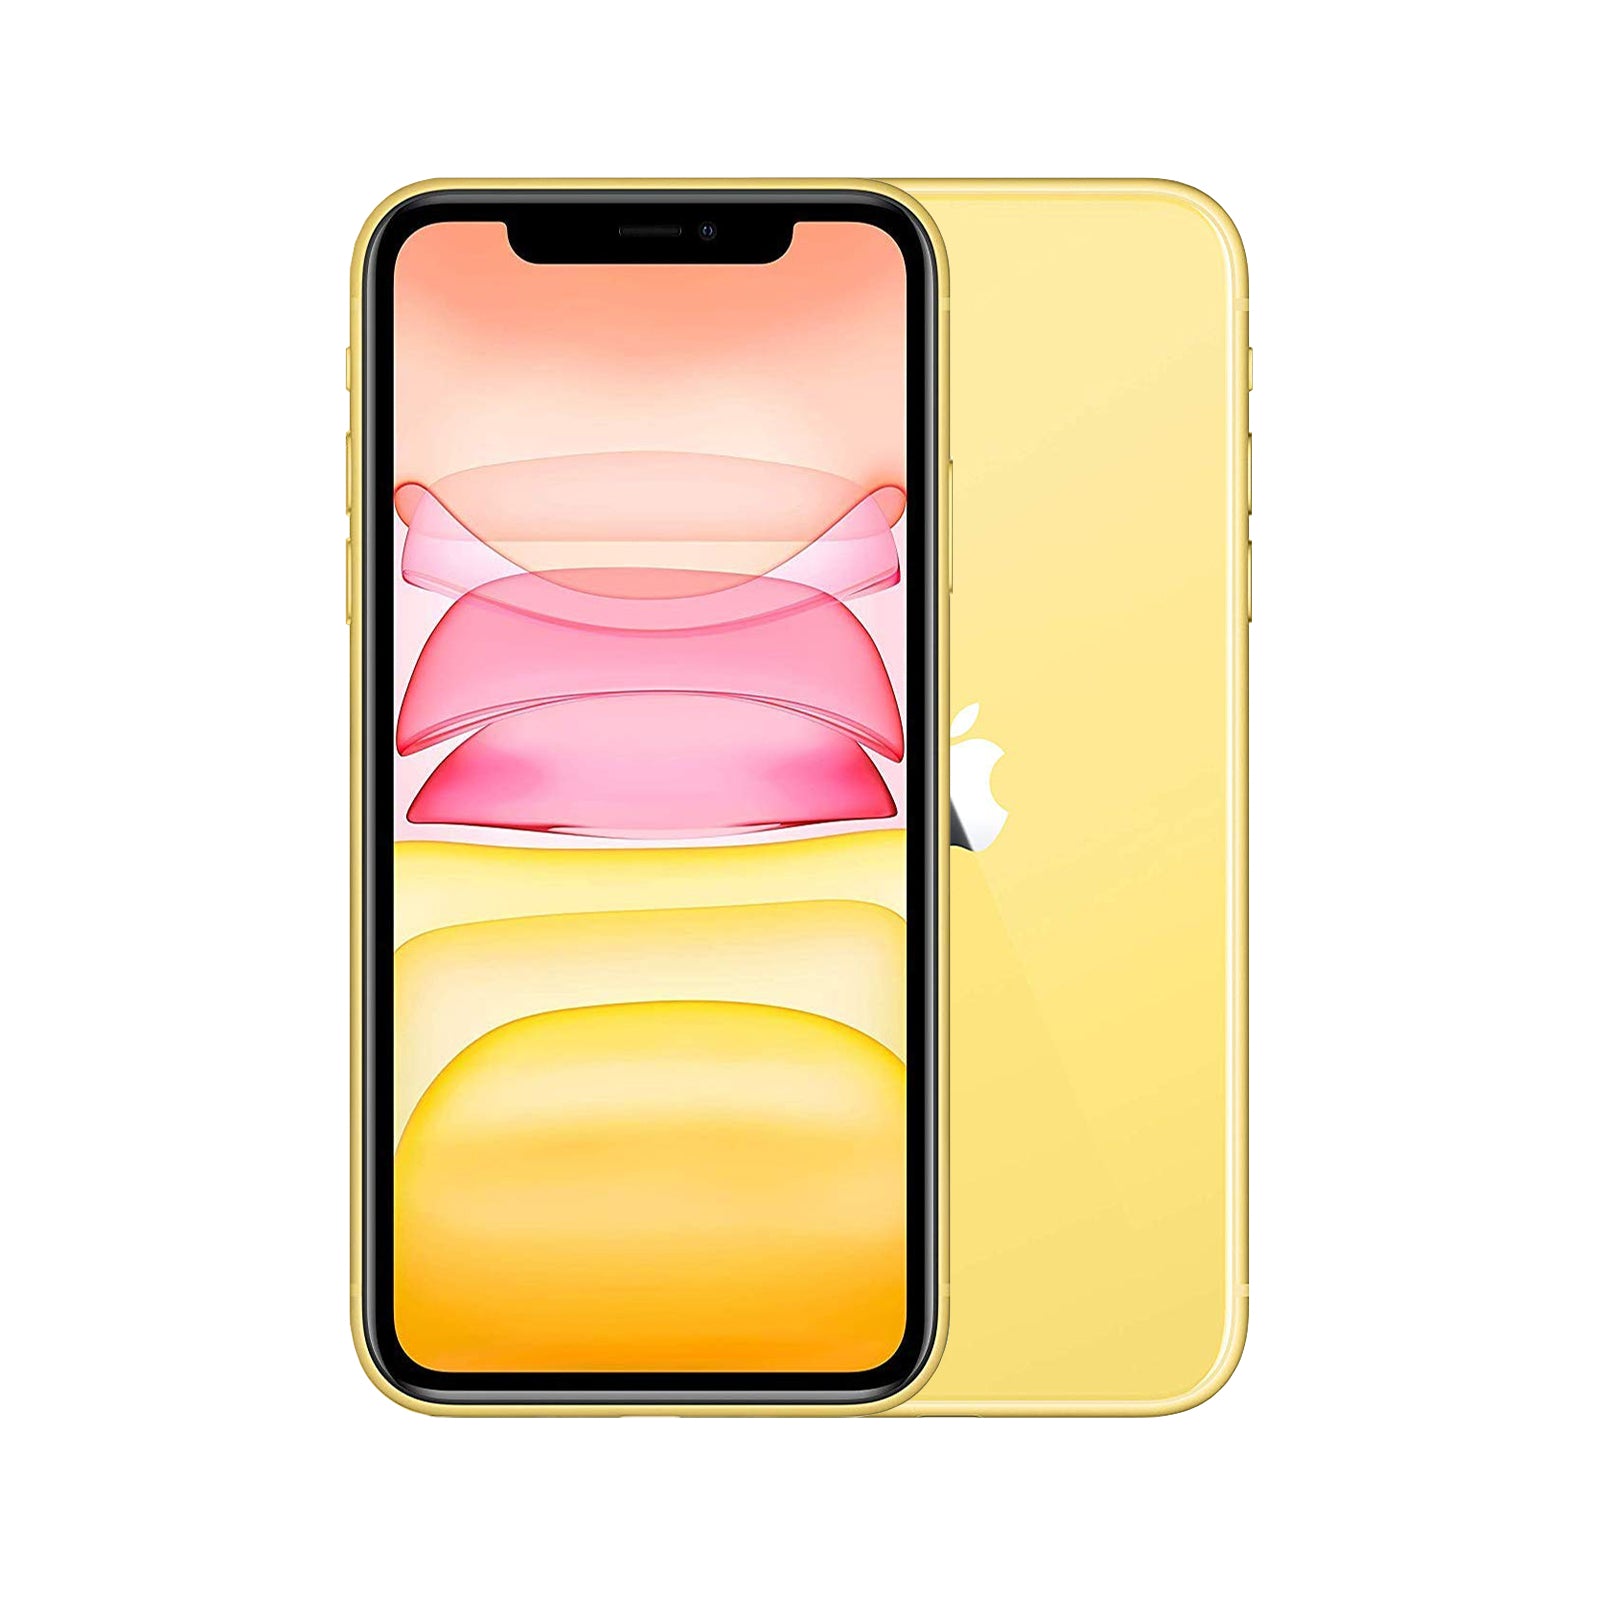 Apple iPhone 11 128GB Yellow - Good - Refurbished